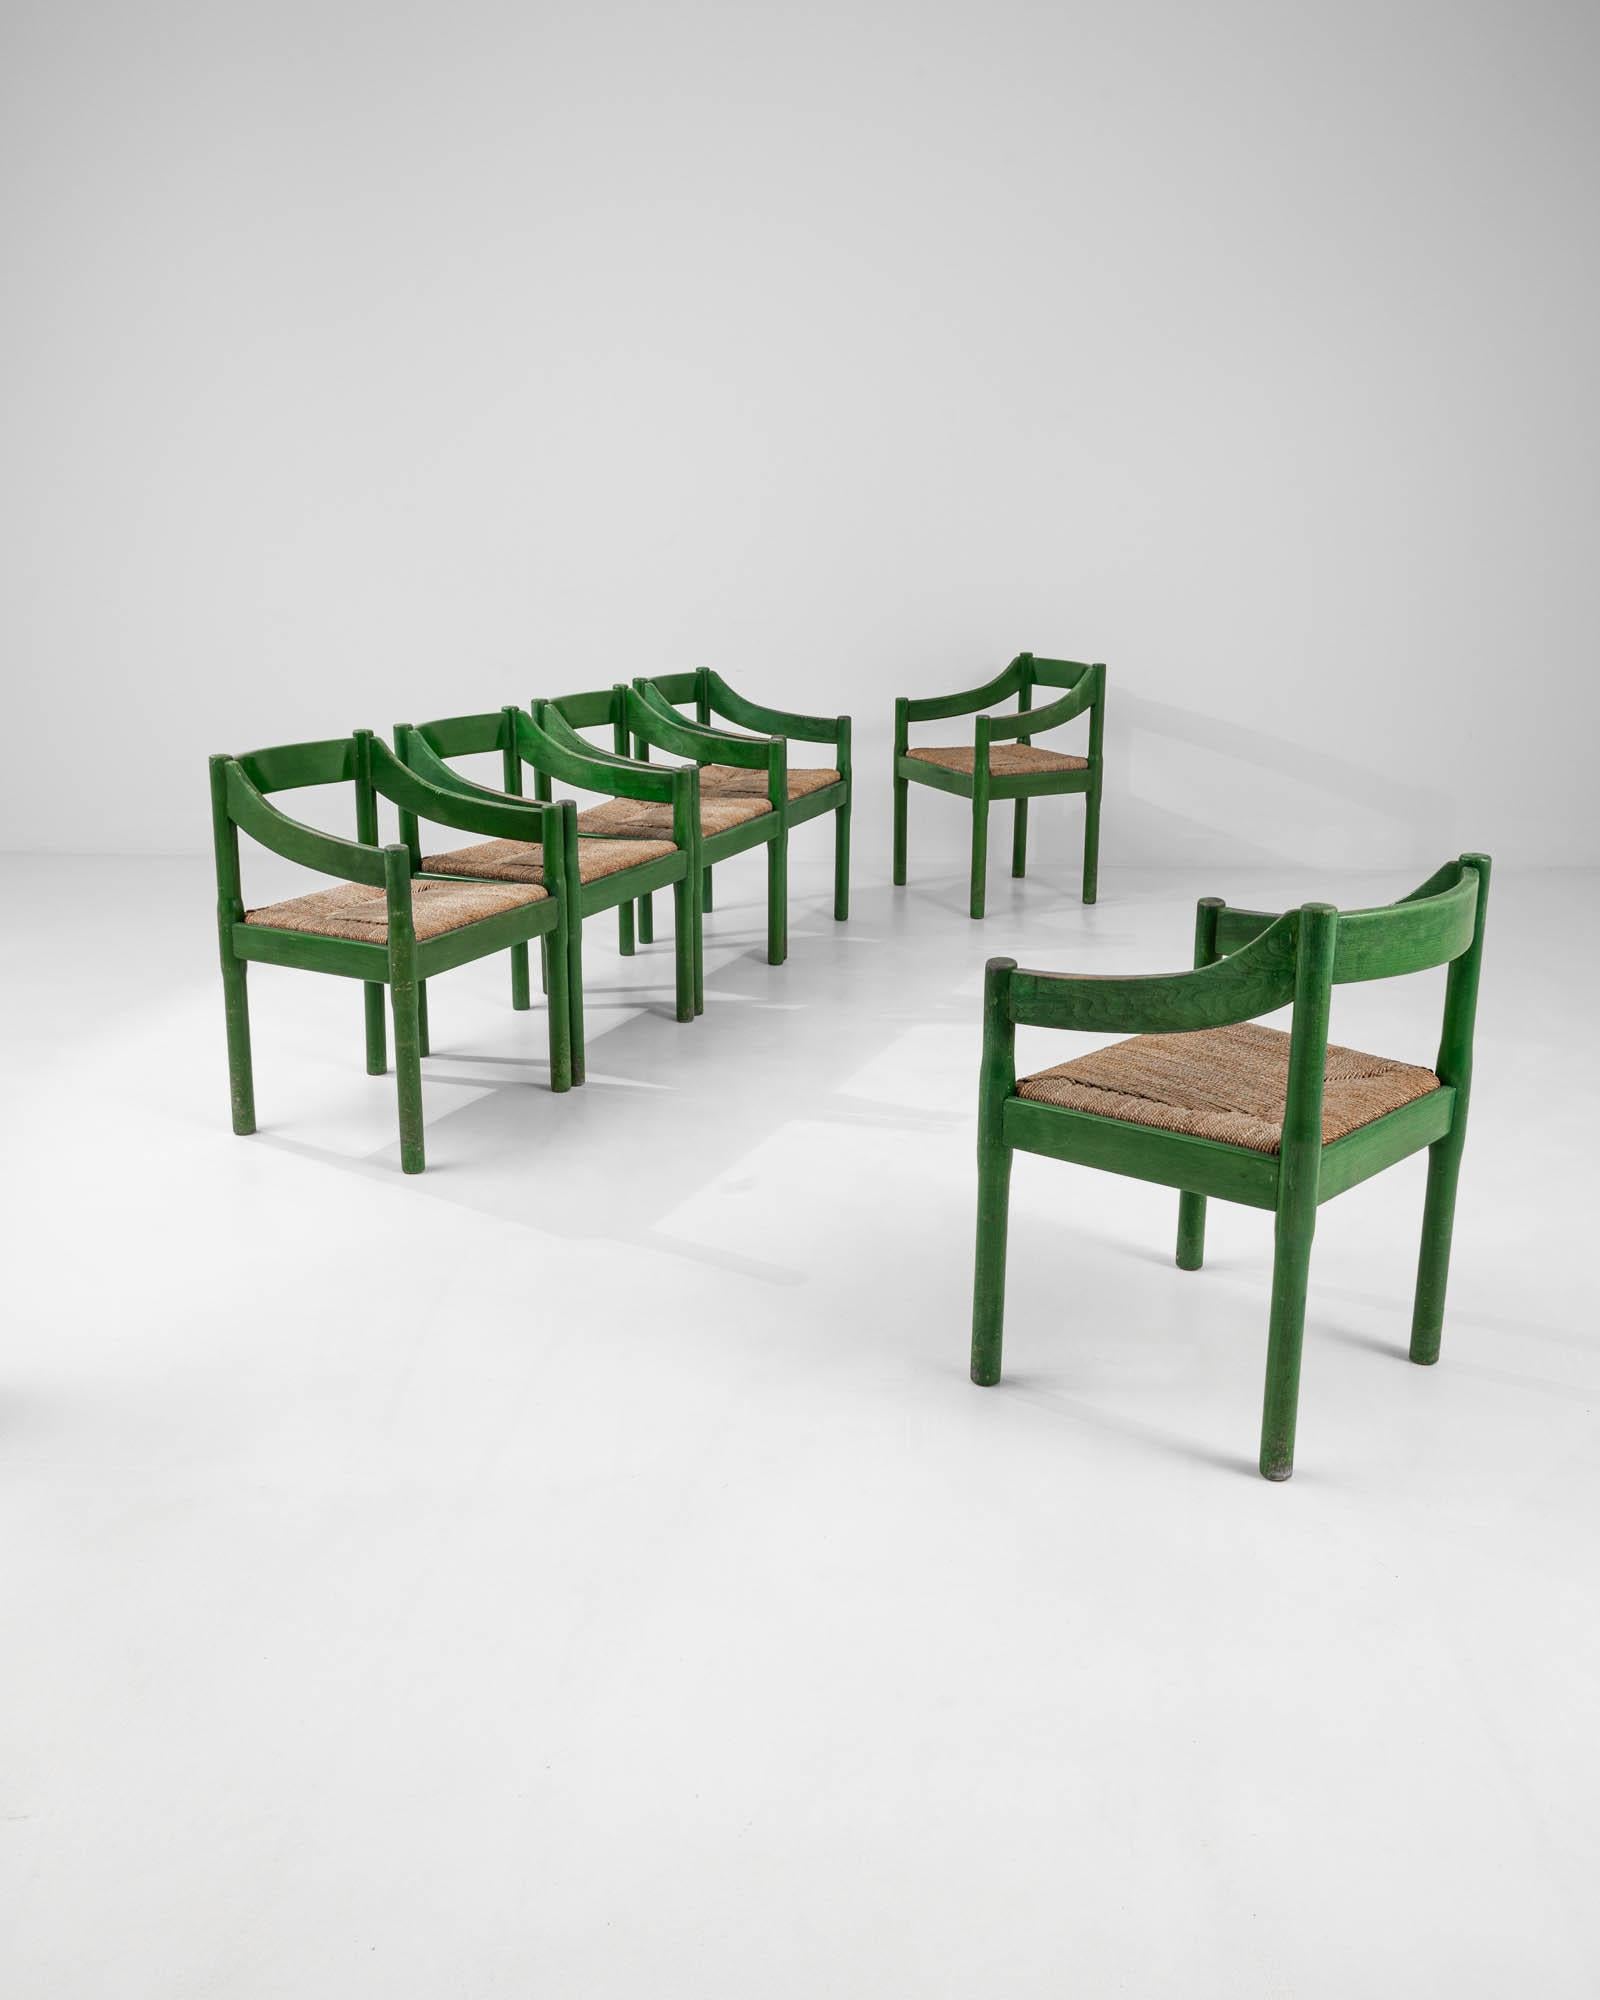 Fabriqués en Italie vers 1960, ces fauteuils en bois sont composés d'une assise en jonc tressé. La finition vert vif donne à ces chaises minimales une touche visuelle frappante, animant le design autrement subtil d'une présence vibrante. Fabriquée